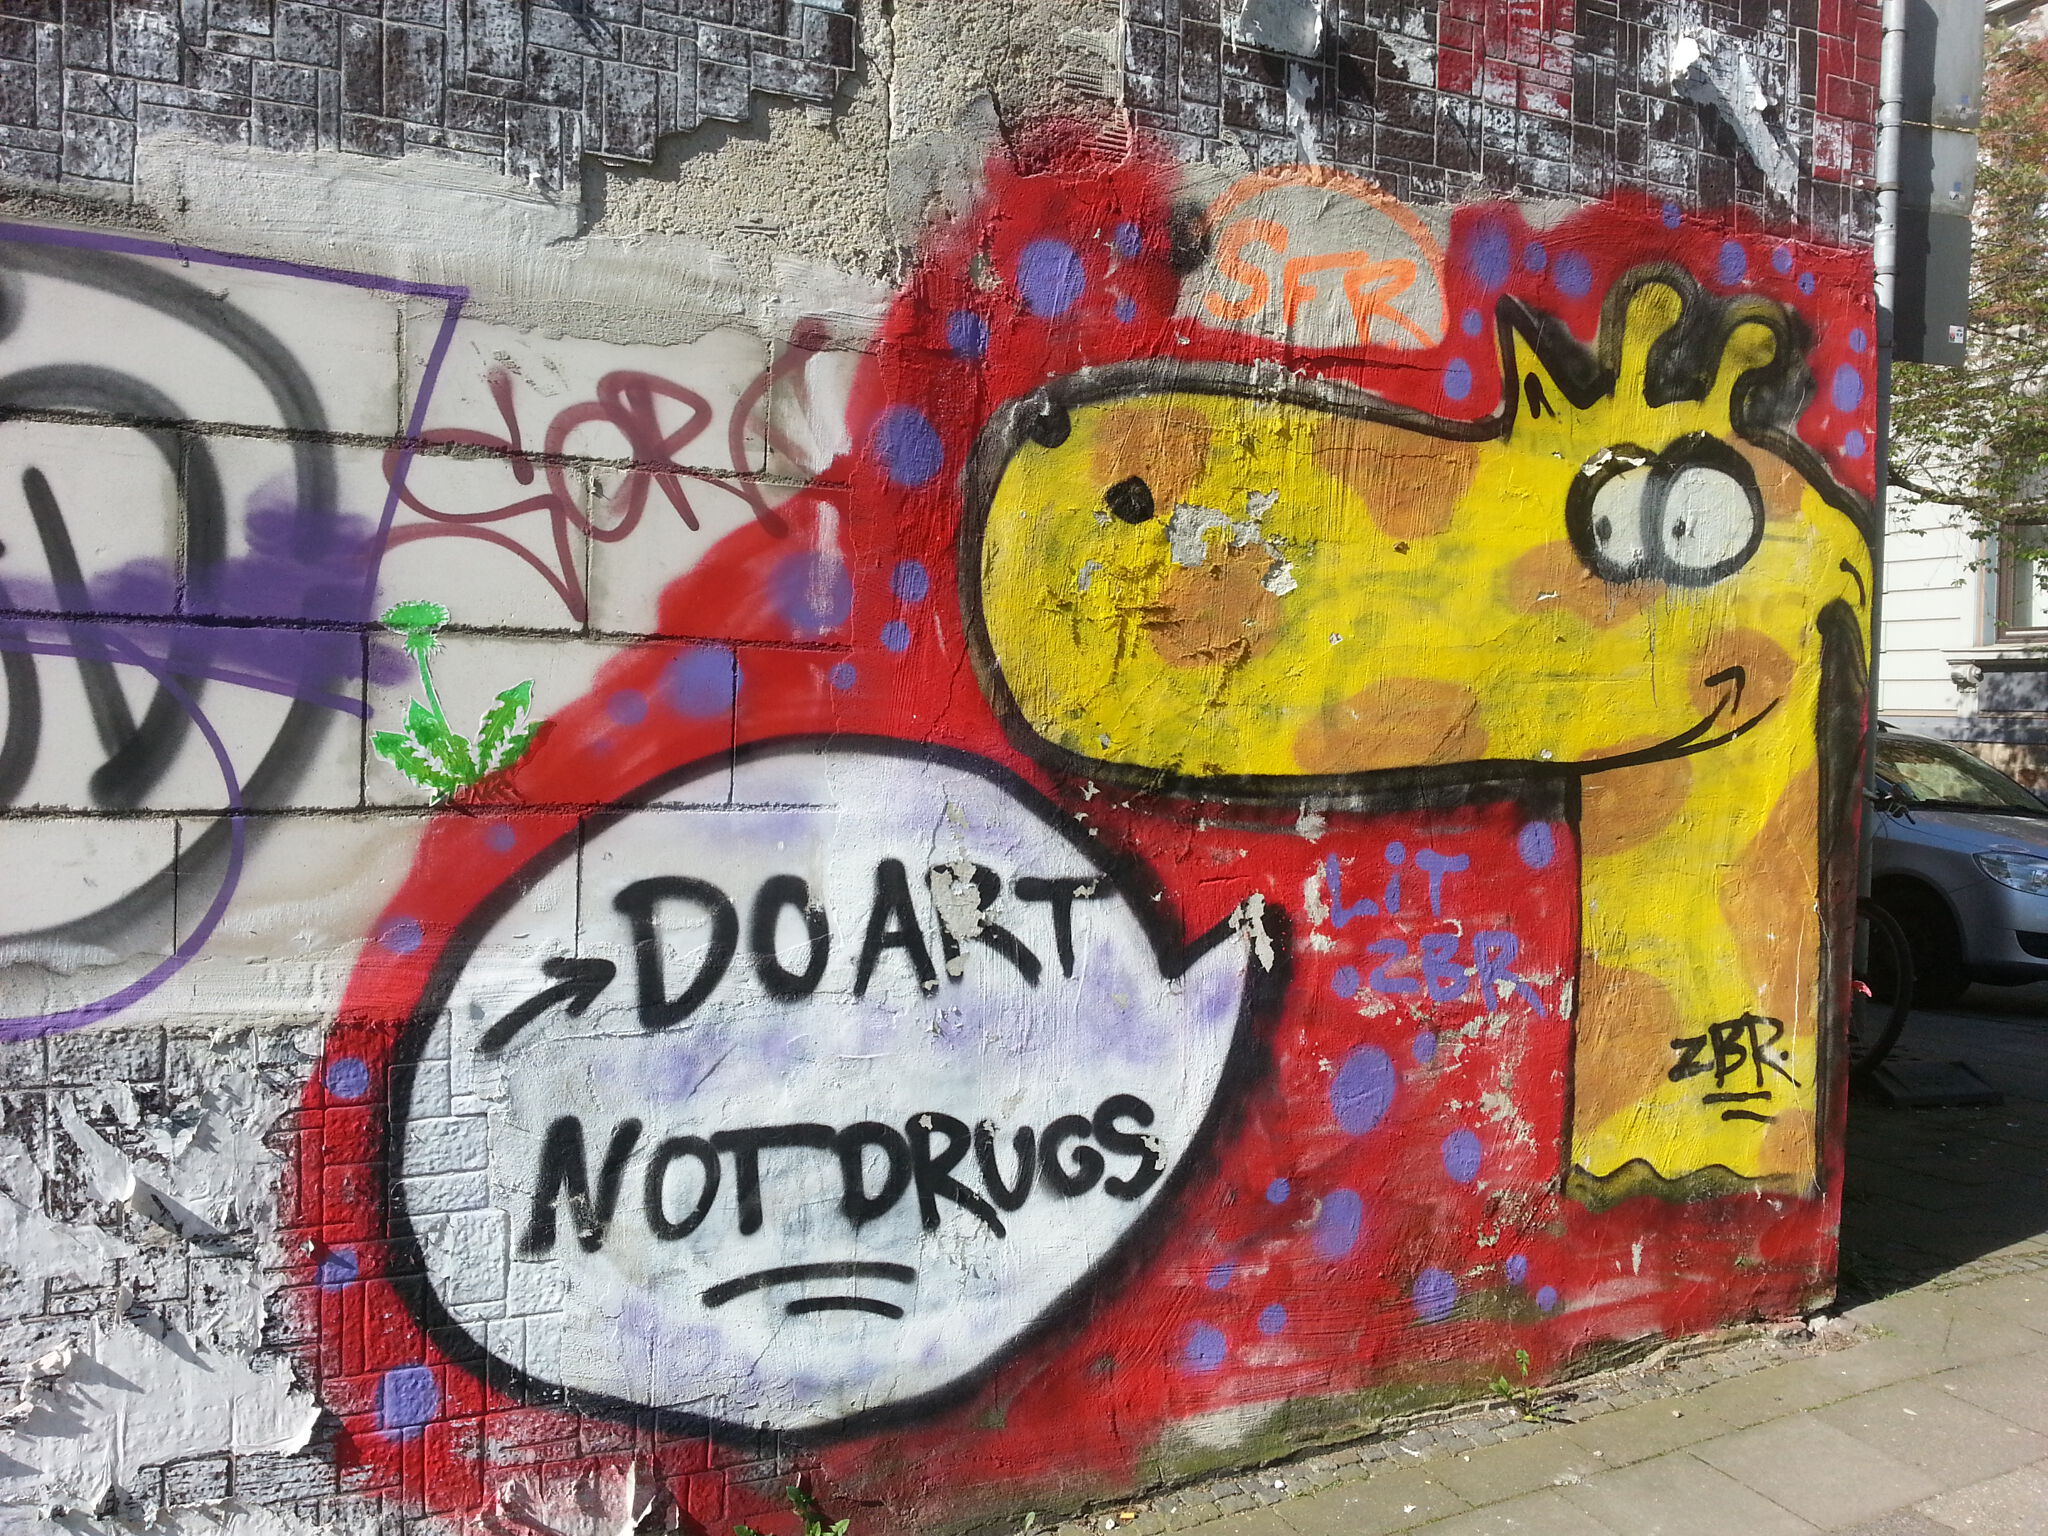 Zbr&mdash;Do Art Not Drugs